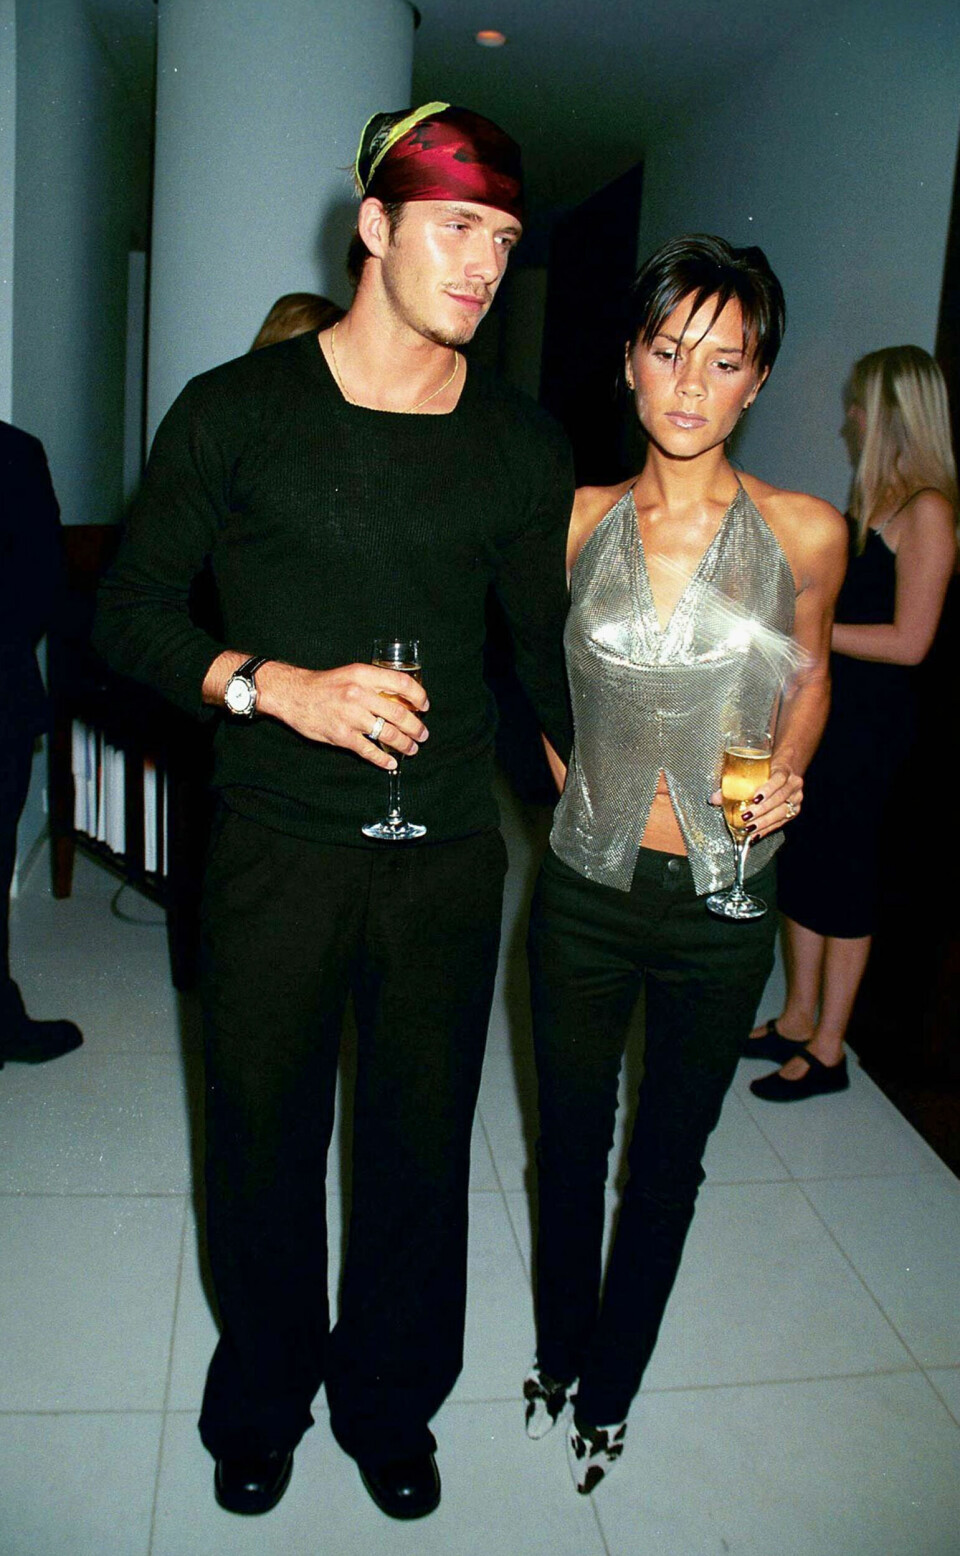 Ikonisk bilde av Victoria Beckham og David Beckham i London.